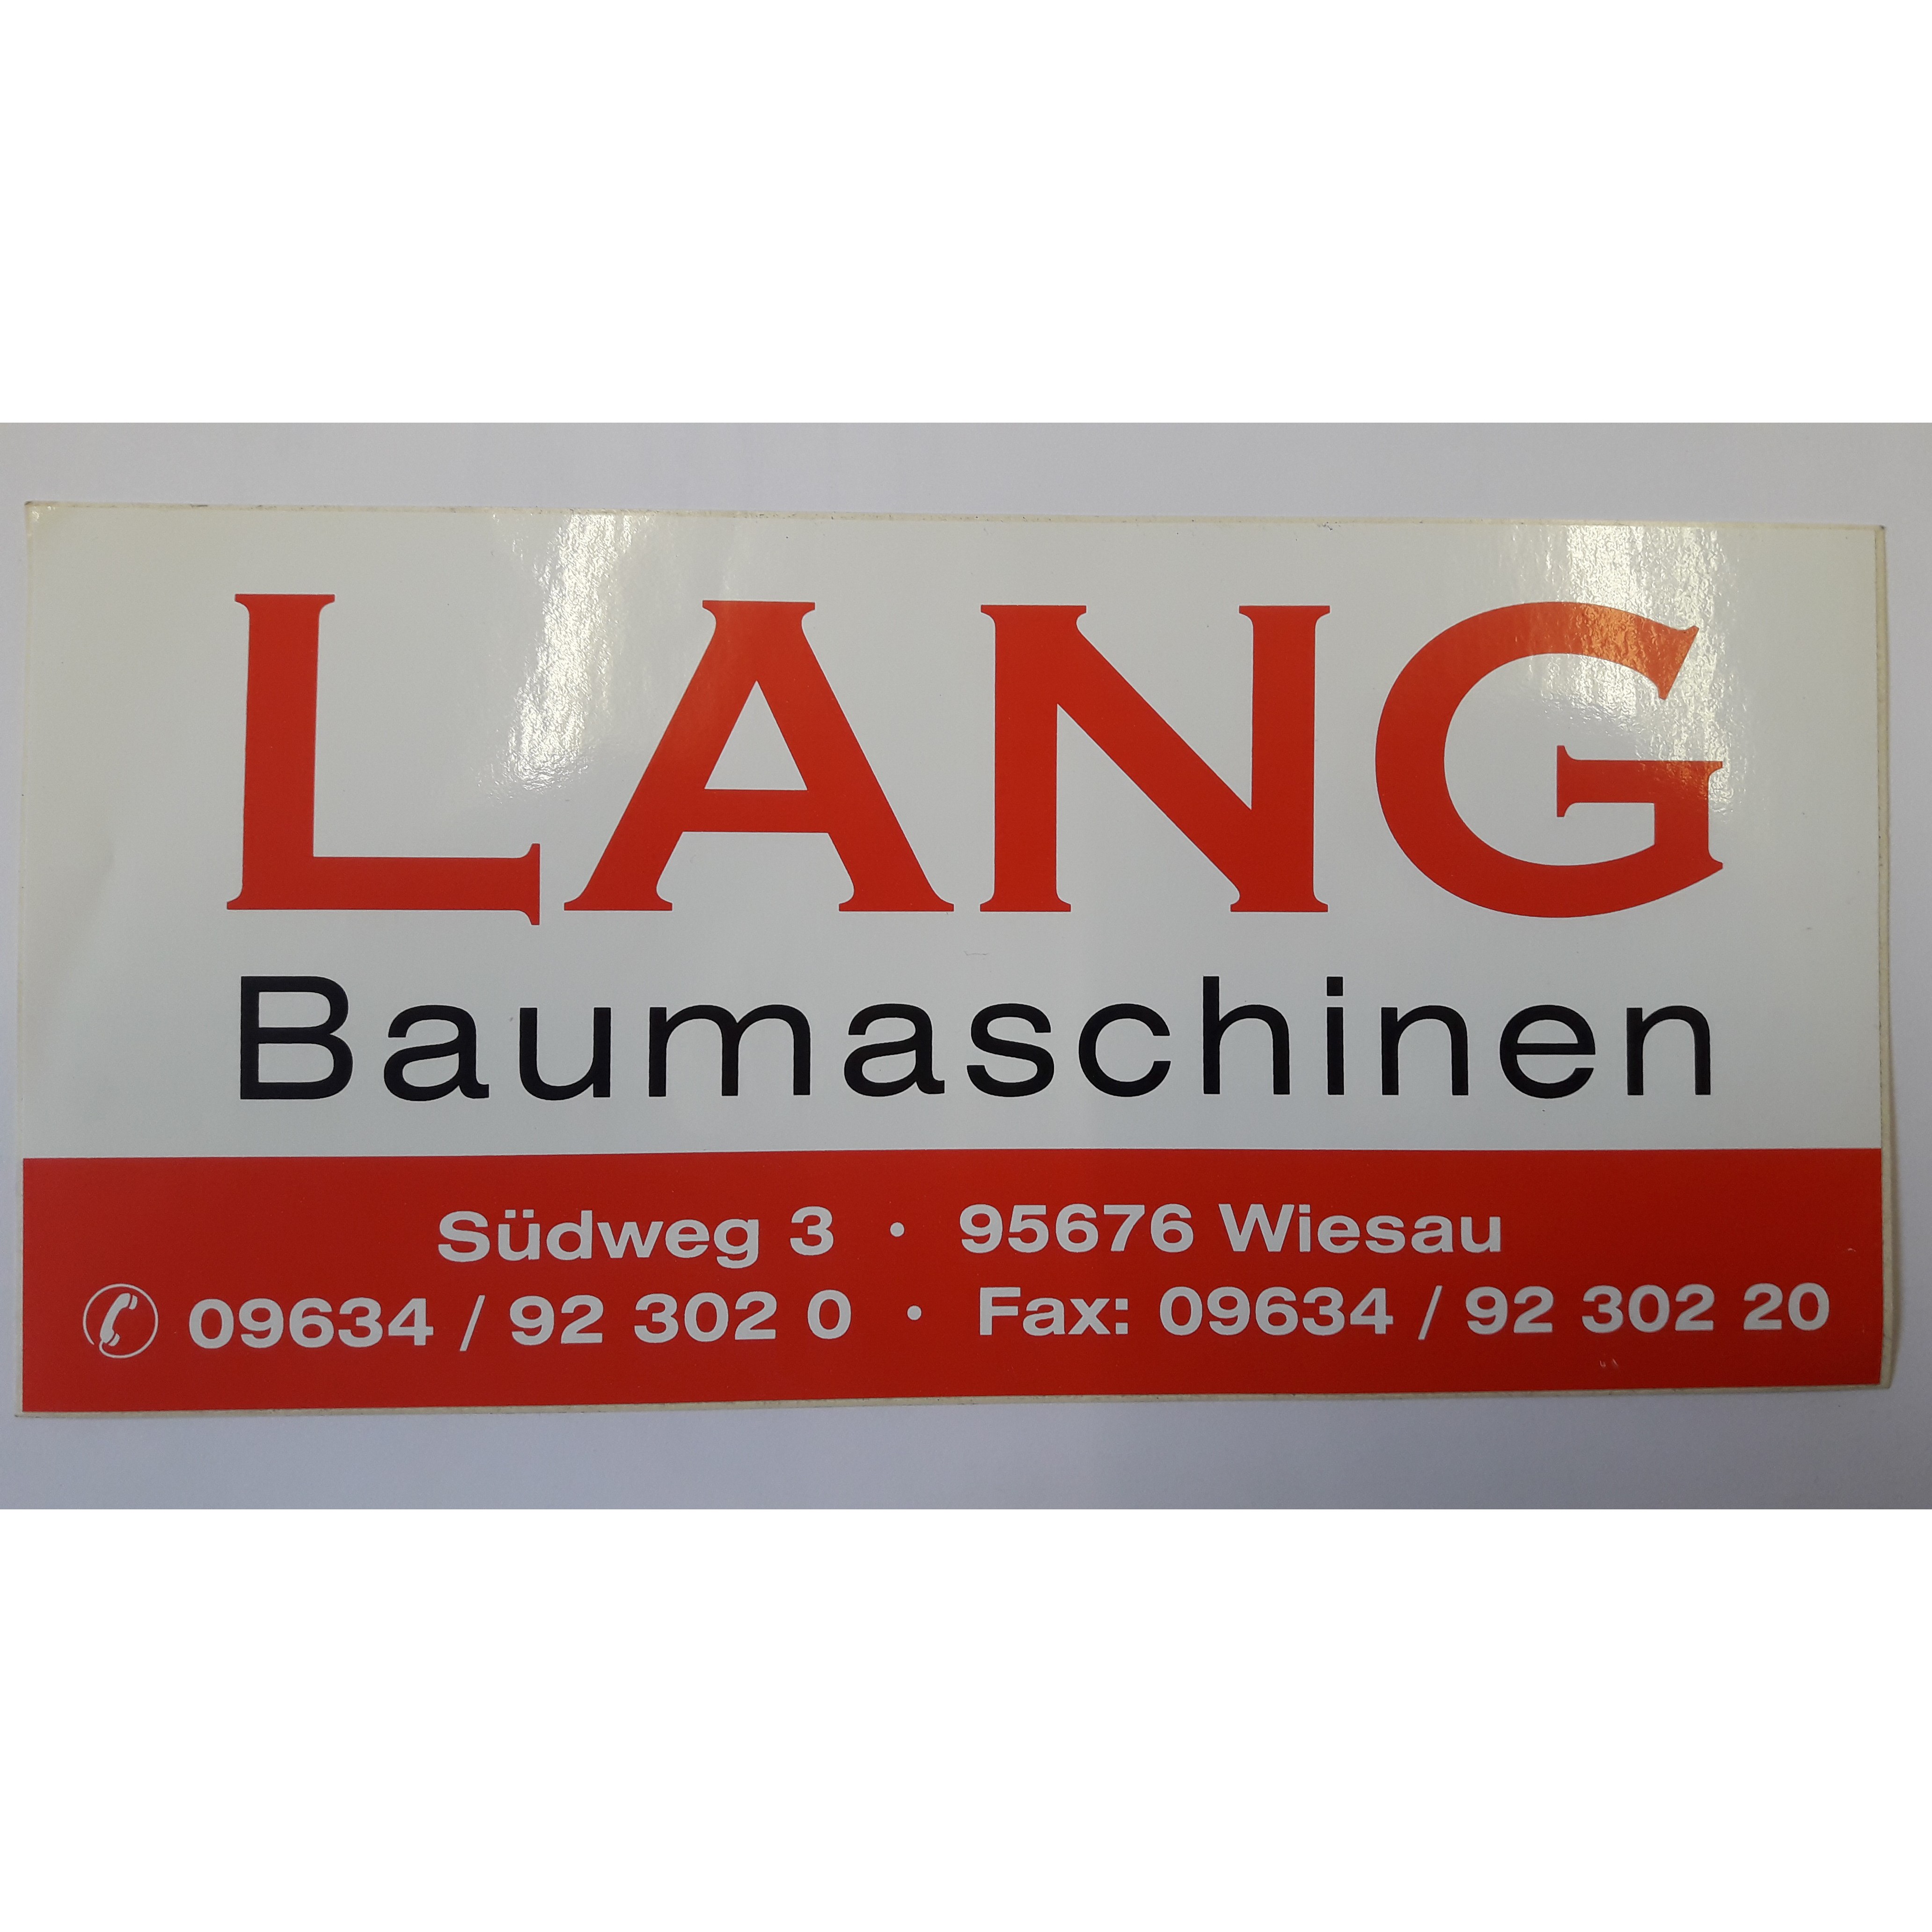 Logo Johann Lang Baumaschinen